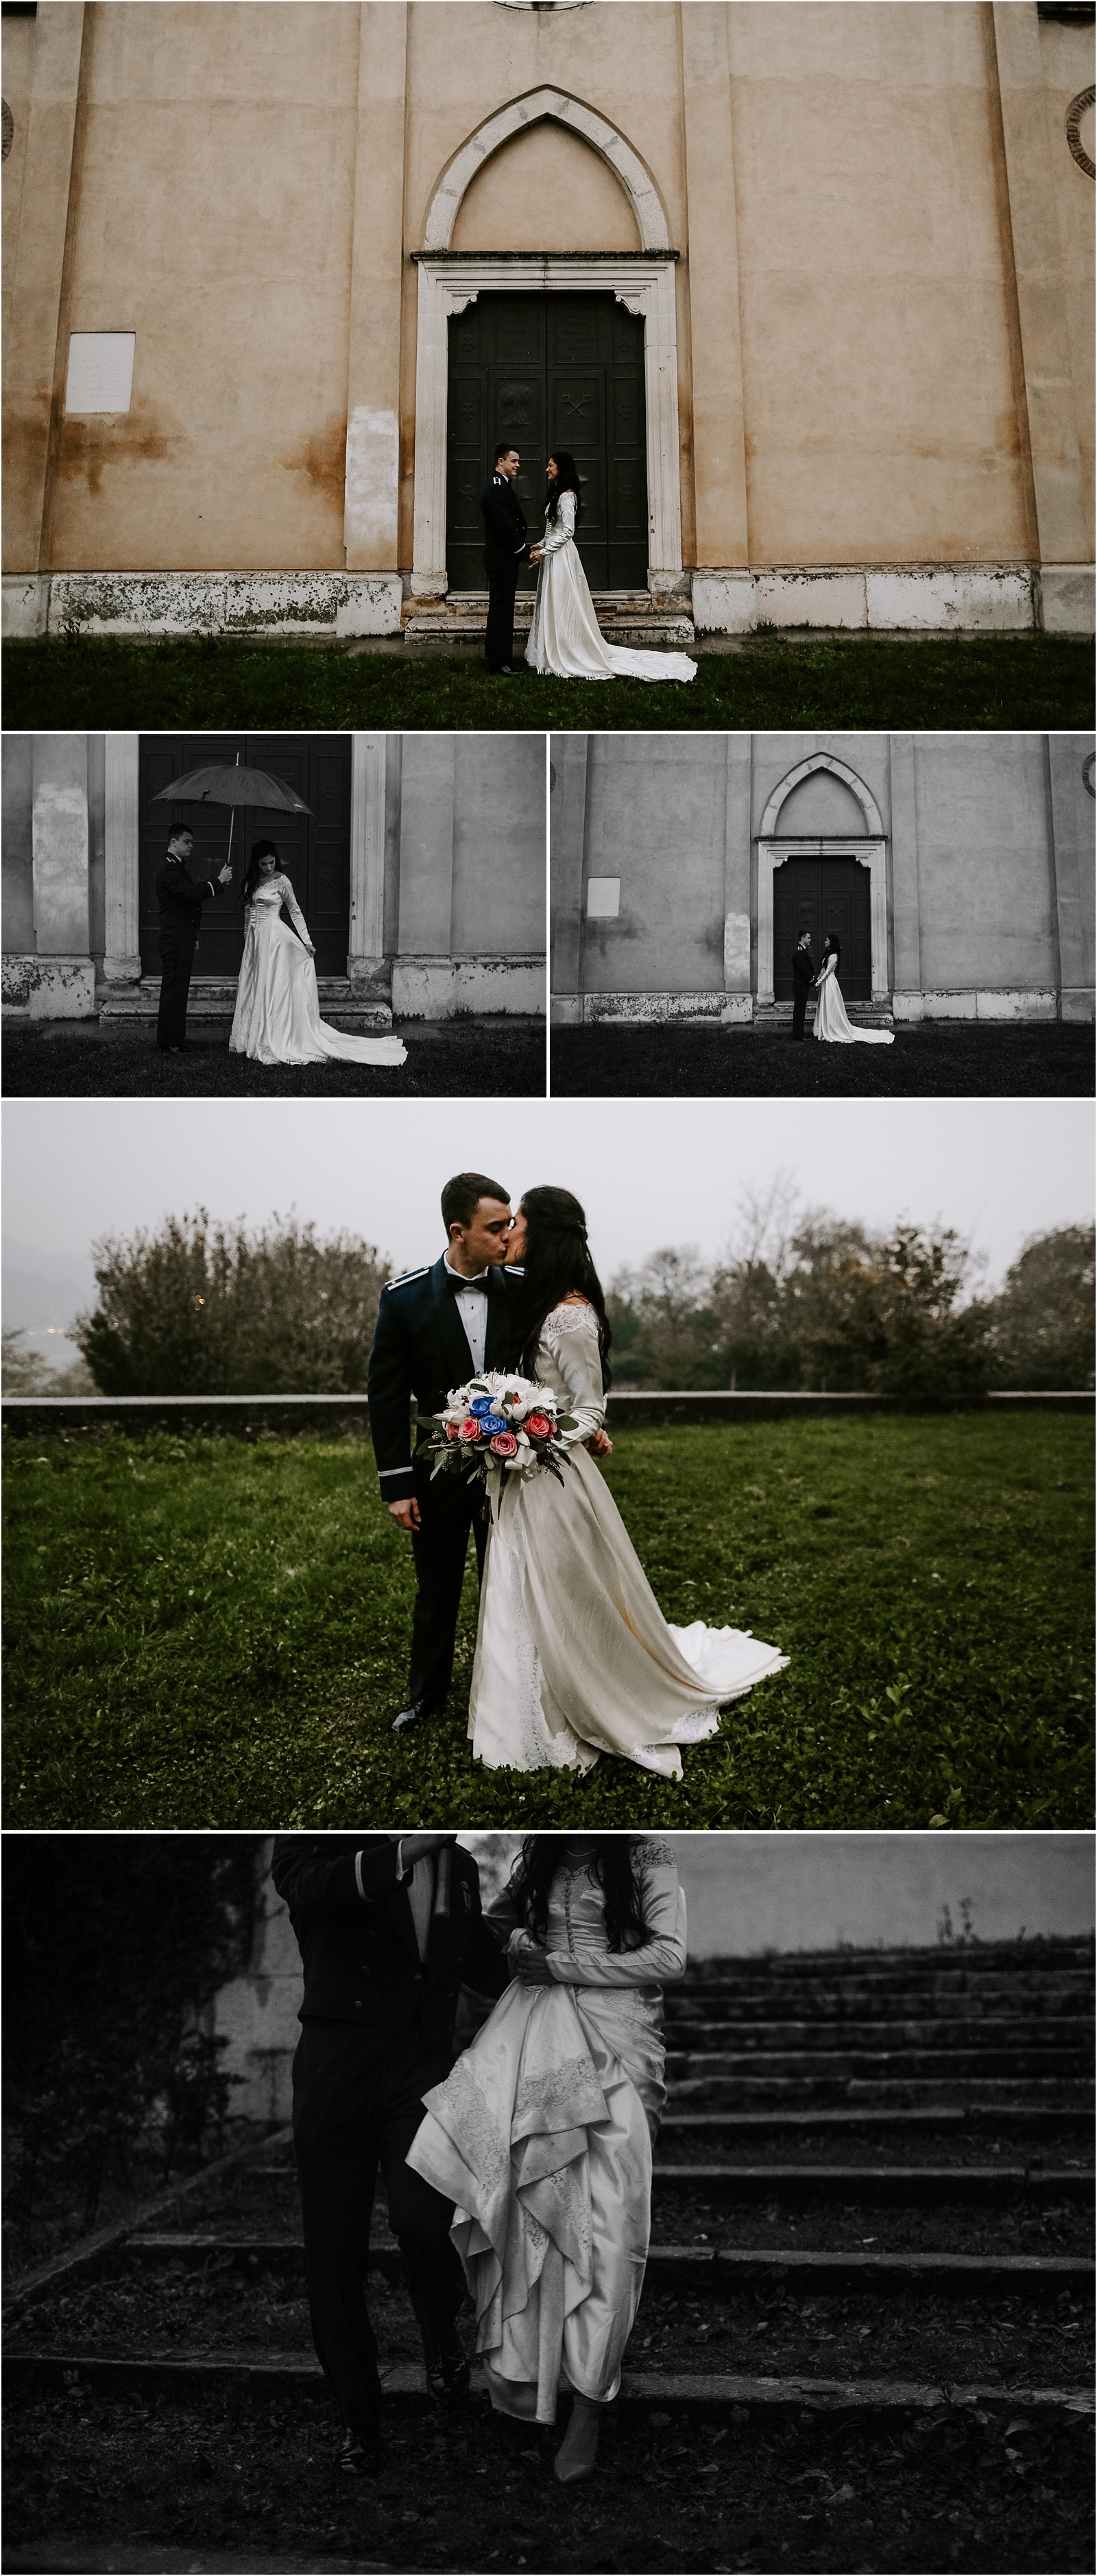 venice Italy wedding, Italy wedding photographer, Italy villa wedding, Venice wedding photographer, the Johnsons photo